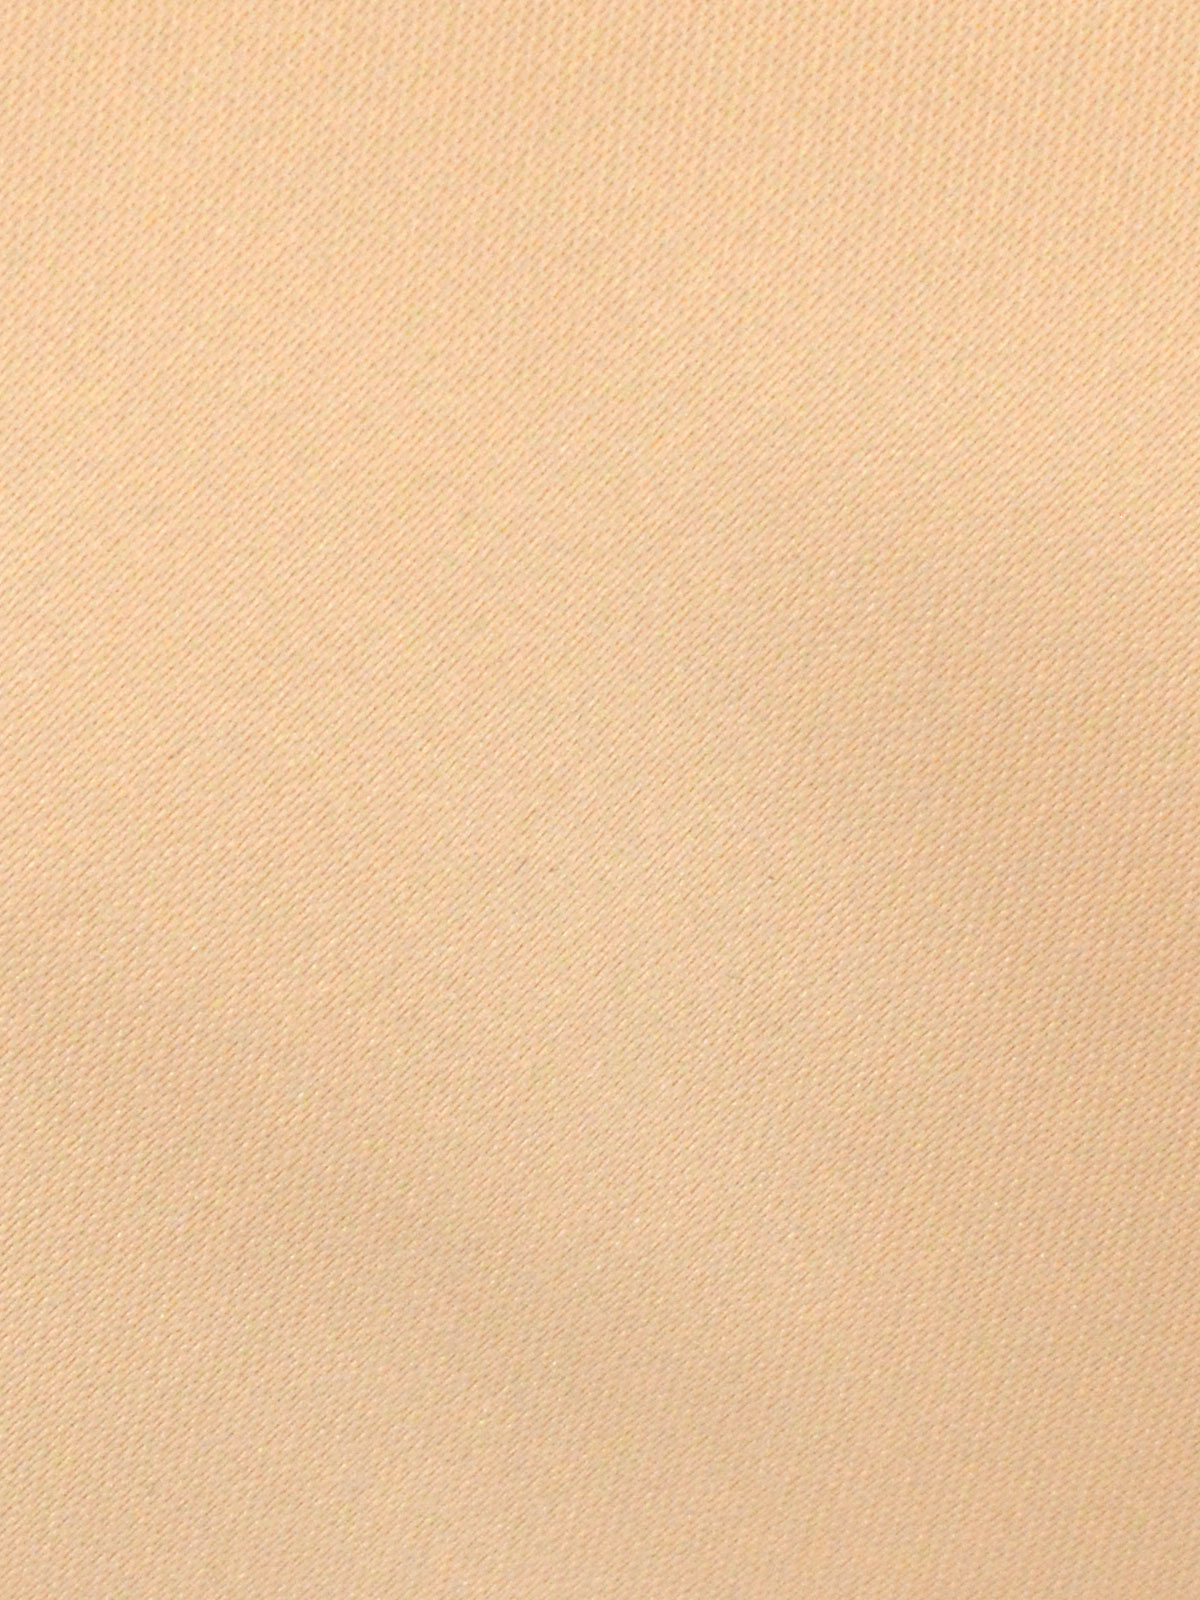  γραβάτα καθαρό ροδακινί  - 10145 - € 14.06 img2